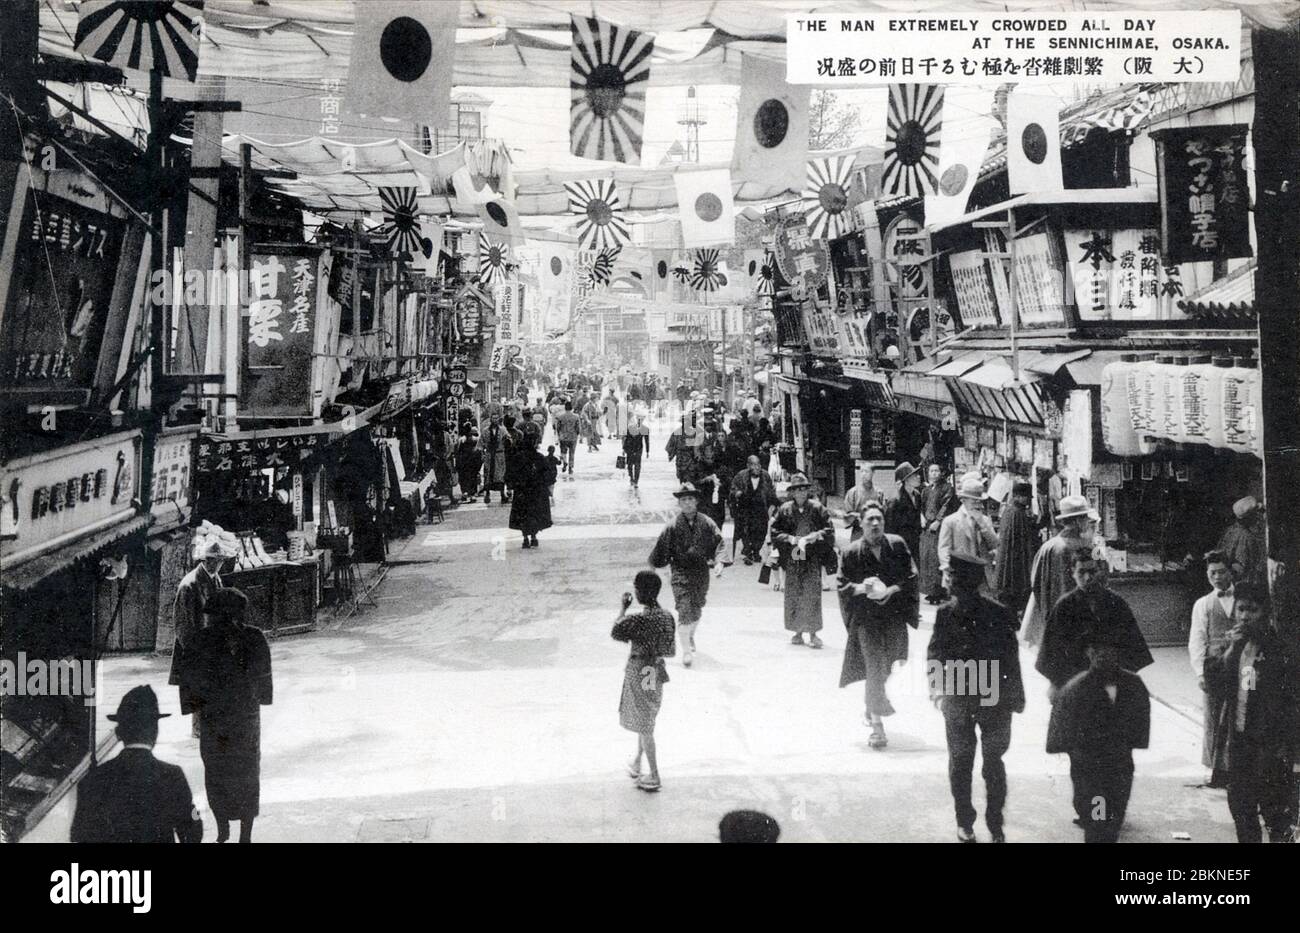 [ 1920 Japon - Osaka Entertainment District ] — les gens marchent sous les drapeaux à Sennichimae, Osaka. Depuis la période Edo (1603-1868), Sennichimae était avec le principal quartier de divertissement de Dotonbori Osaka. carte postale vintage du xxe siècle. Banque D'Images